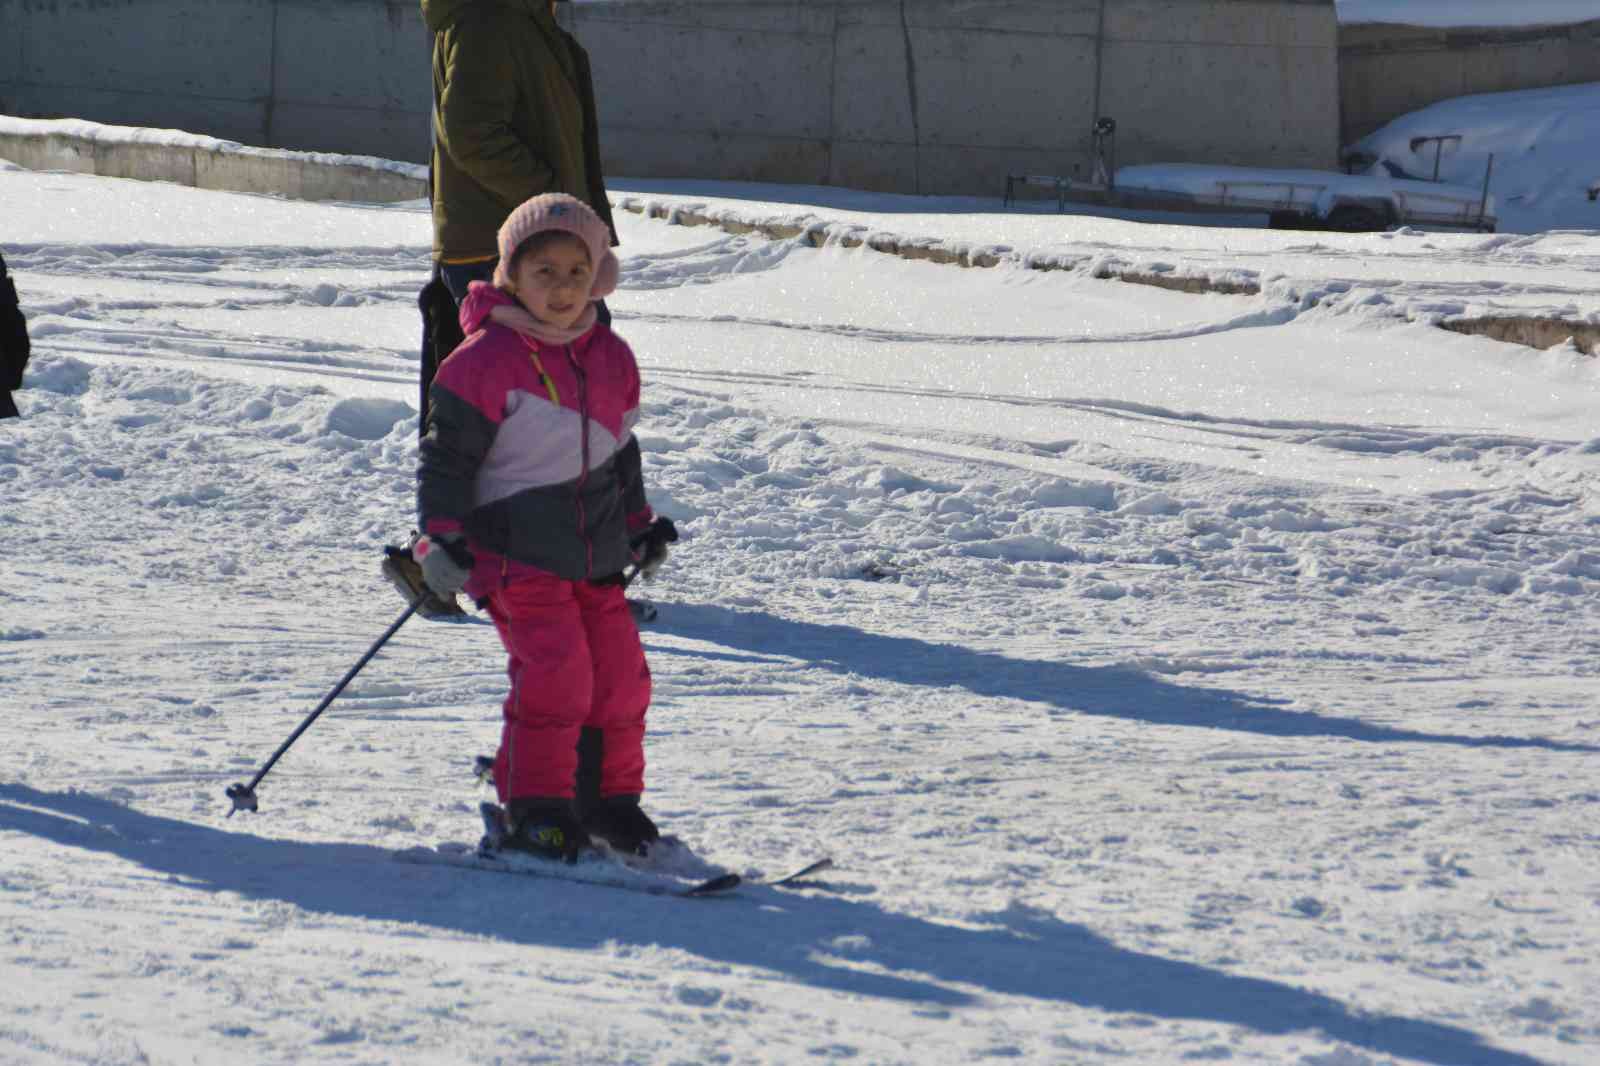 Sarıkamış Kayak Merkezi İranlı turistlerin uğrak yeri oldu #kars